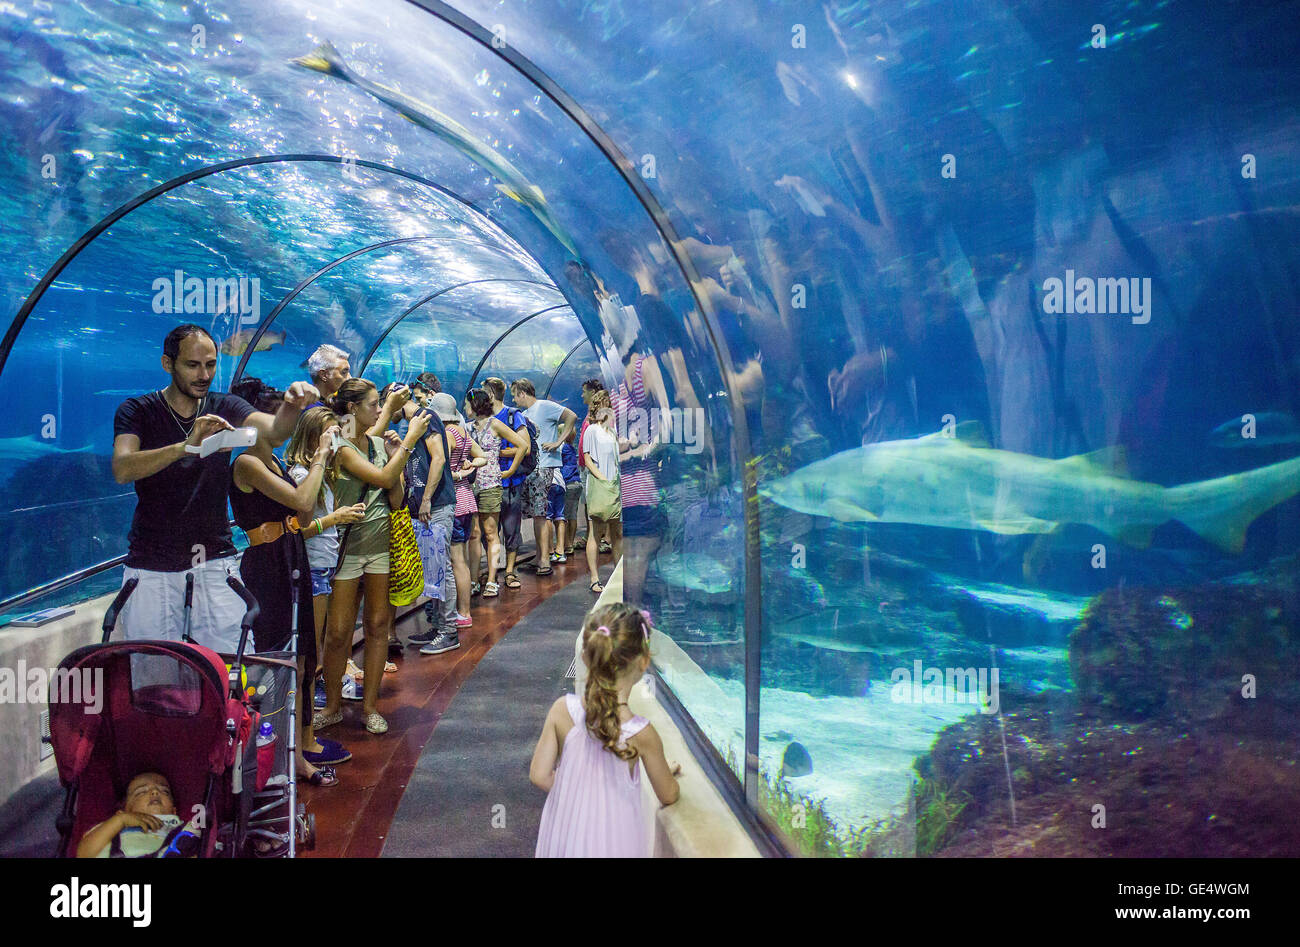 Tunnel sottomarino in un acquario, L'Aquarium, Moll d'Espana, Barcellona,  in Catalogna, Spagna Foto stock - Alamy